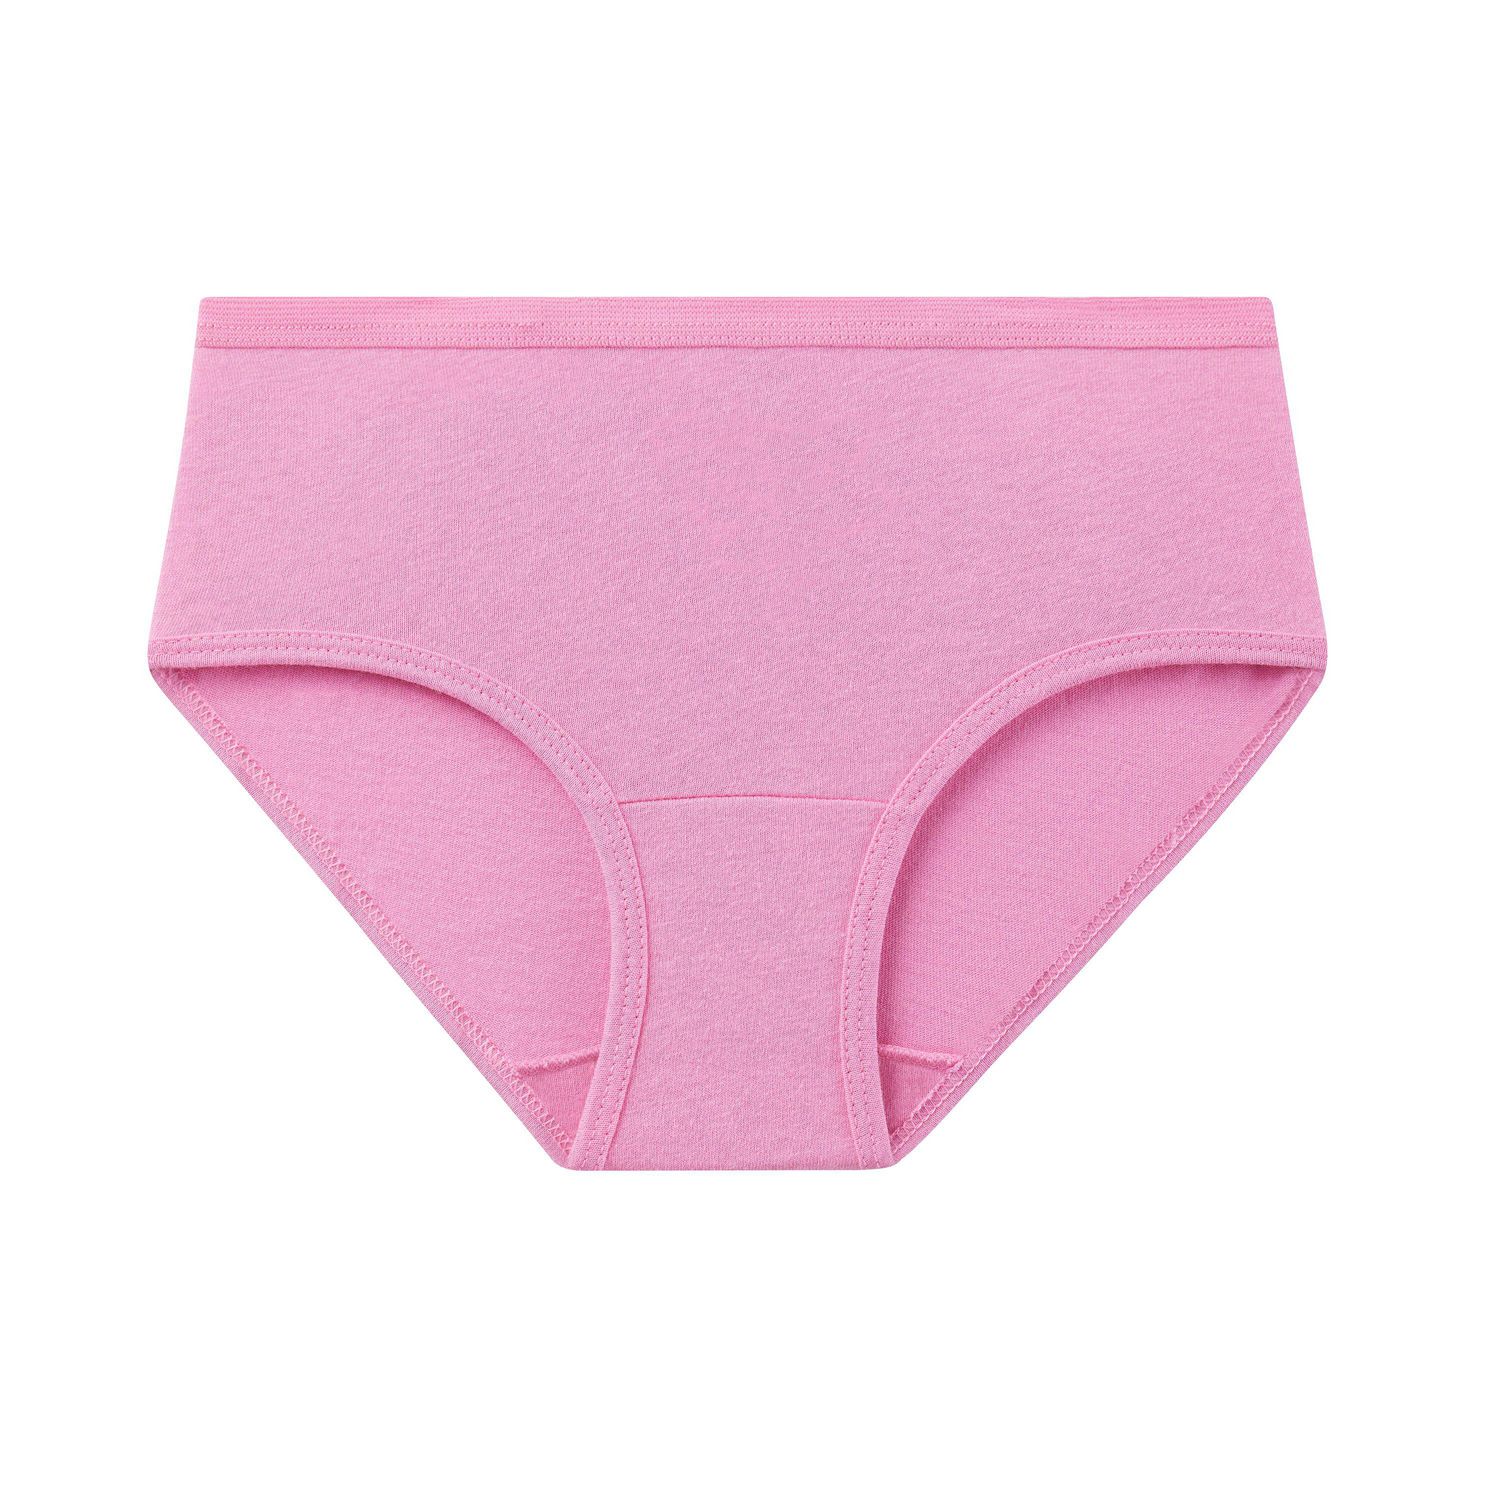 GetUSCart- Fruit of the Loom Girls' Little Cotton Brief Underwear